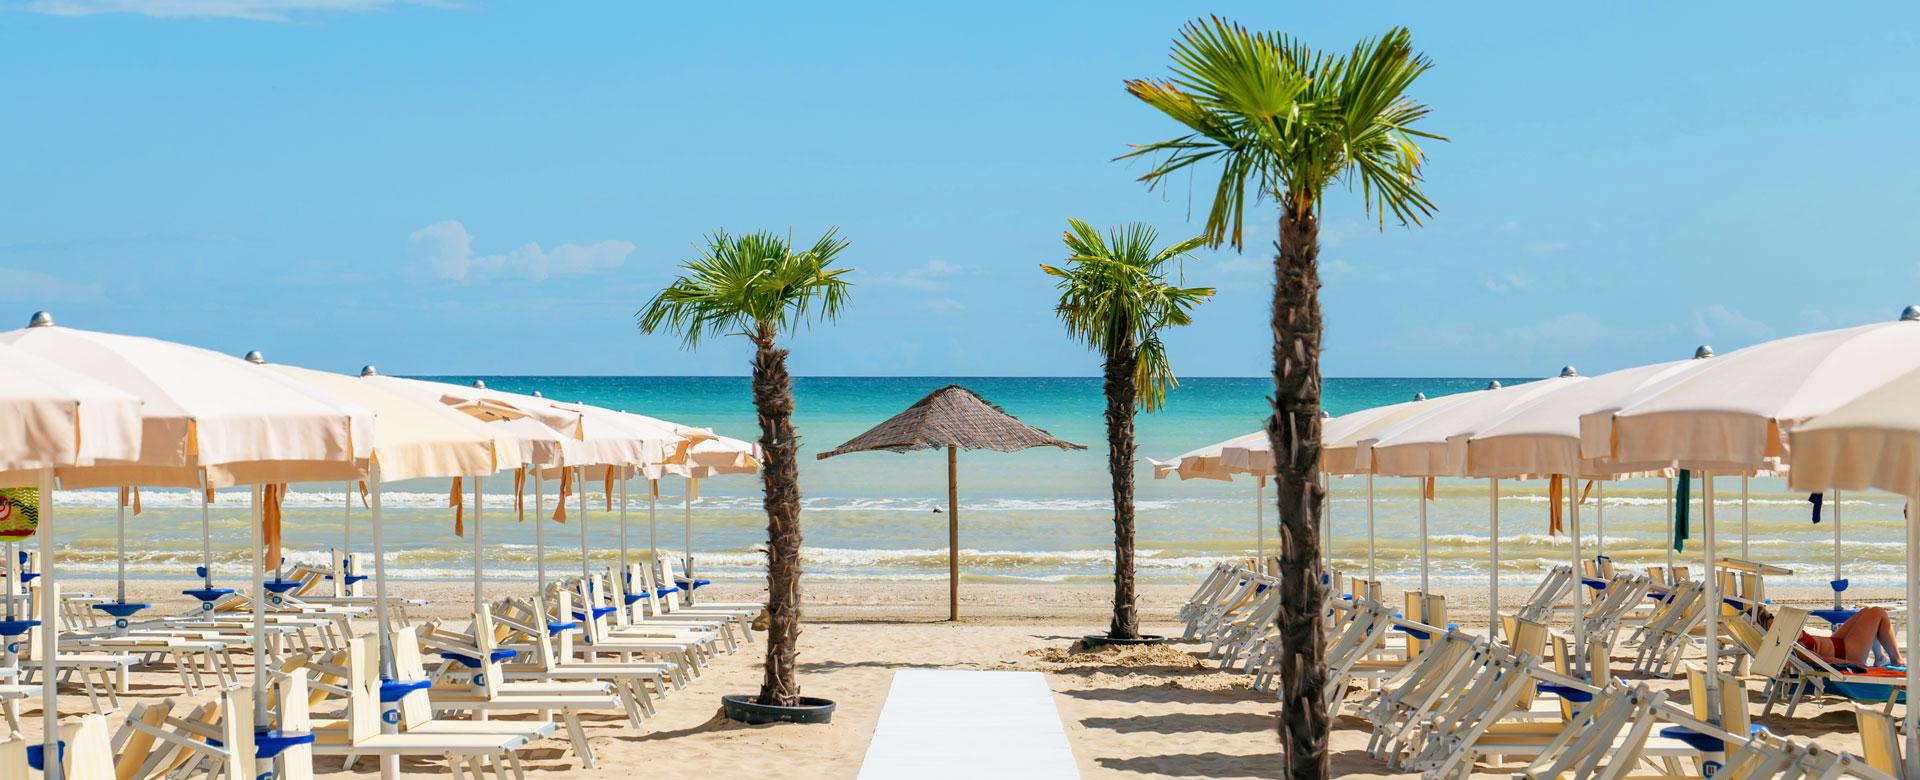 Spiaggia con ombrelloni, lettini e palme, vista sul mare azzurro.